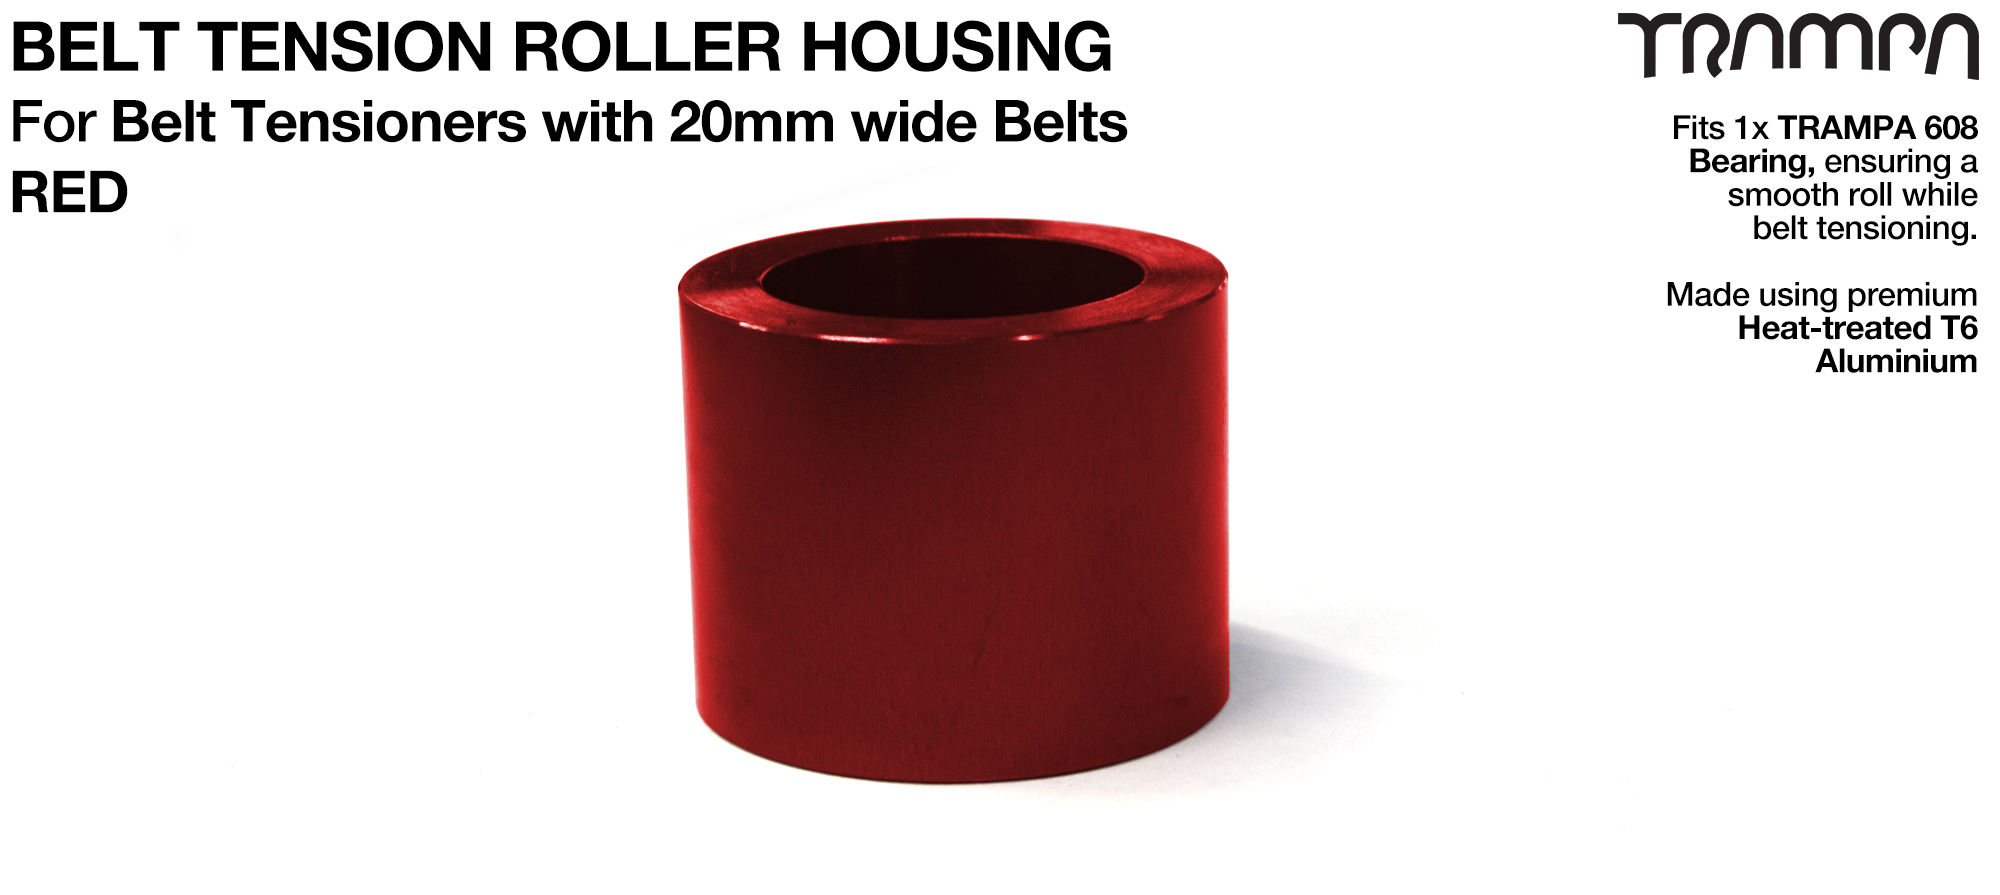 Belt Tension Roller Housing for 20mm Belts - RED